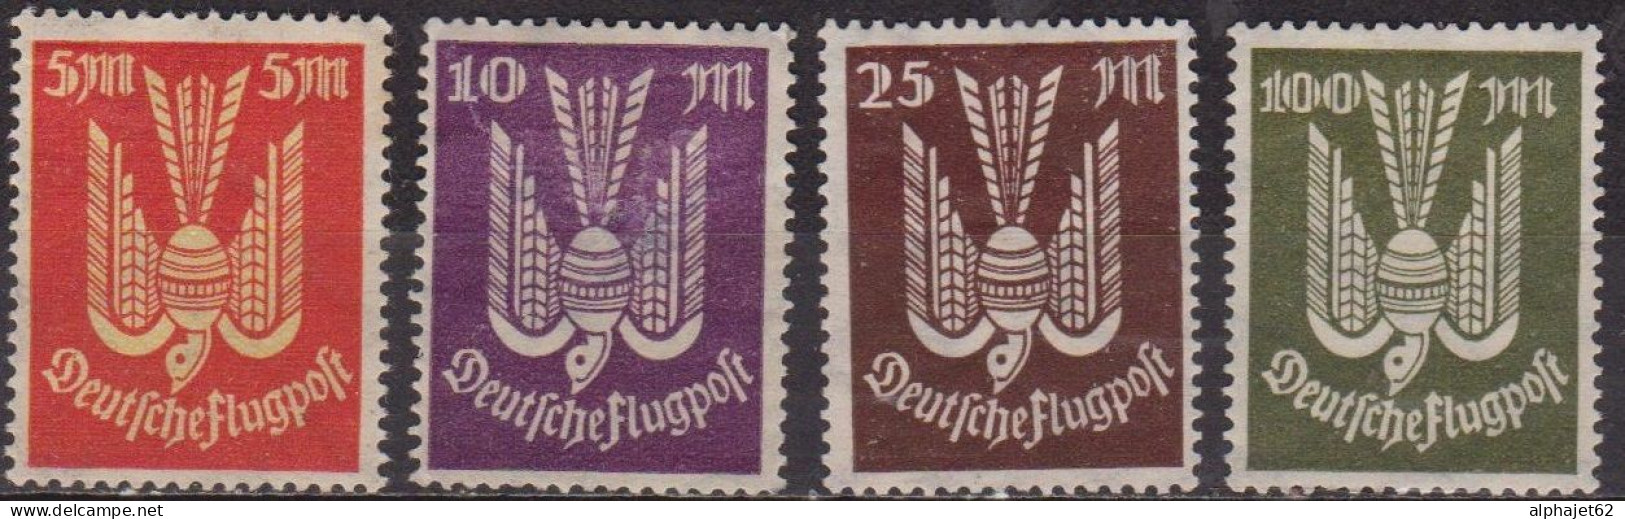 Oiseau - ALLEMAGNE - Deutsche Flugpost - Poste Aérienne - N° 15-16-17-18 * - 1922 - Airmail & Zeppelin